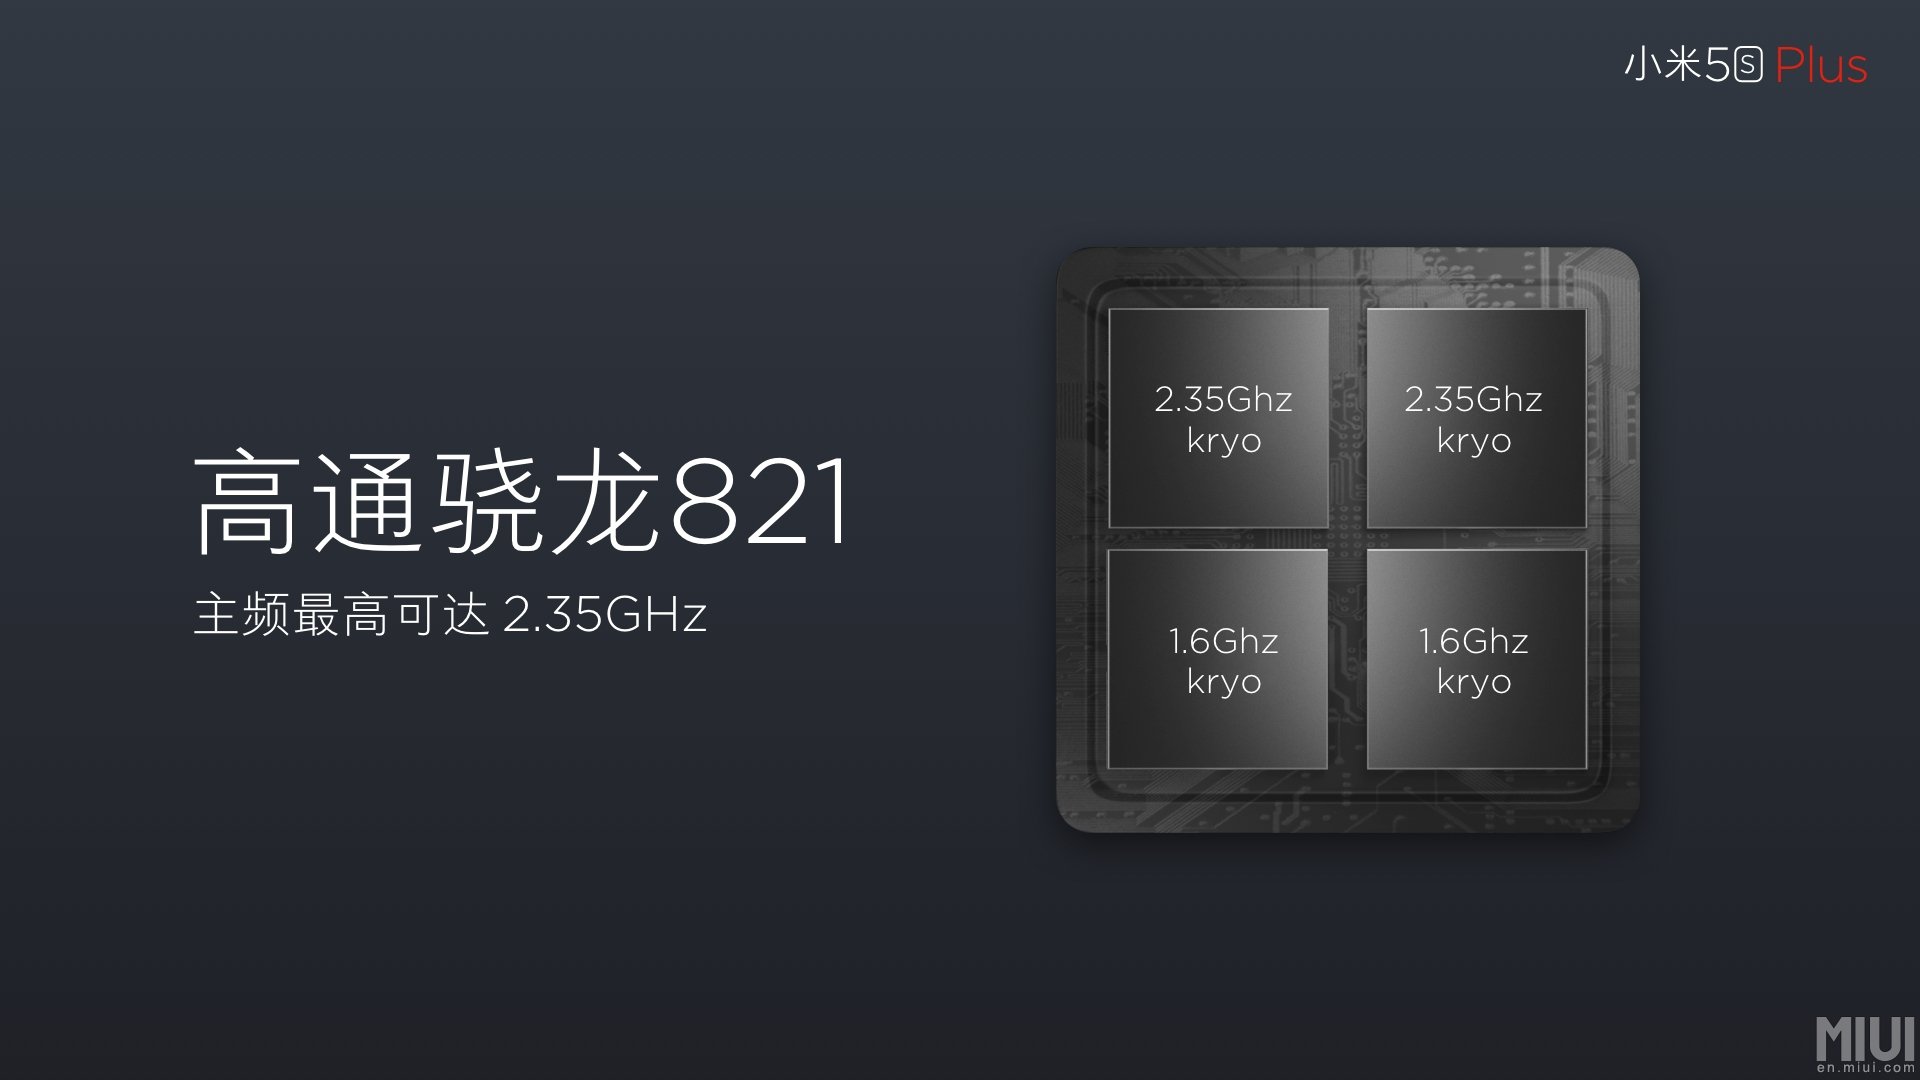 Xiaomi mi 5s plus snapdragon 821